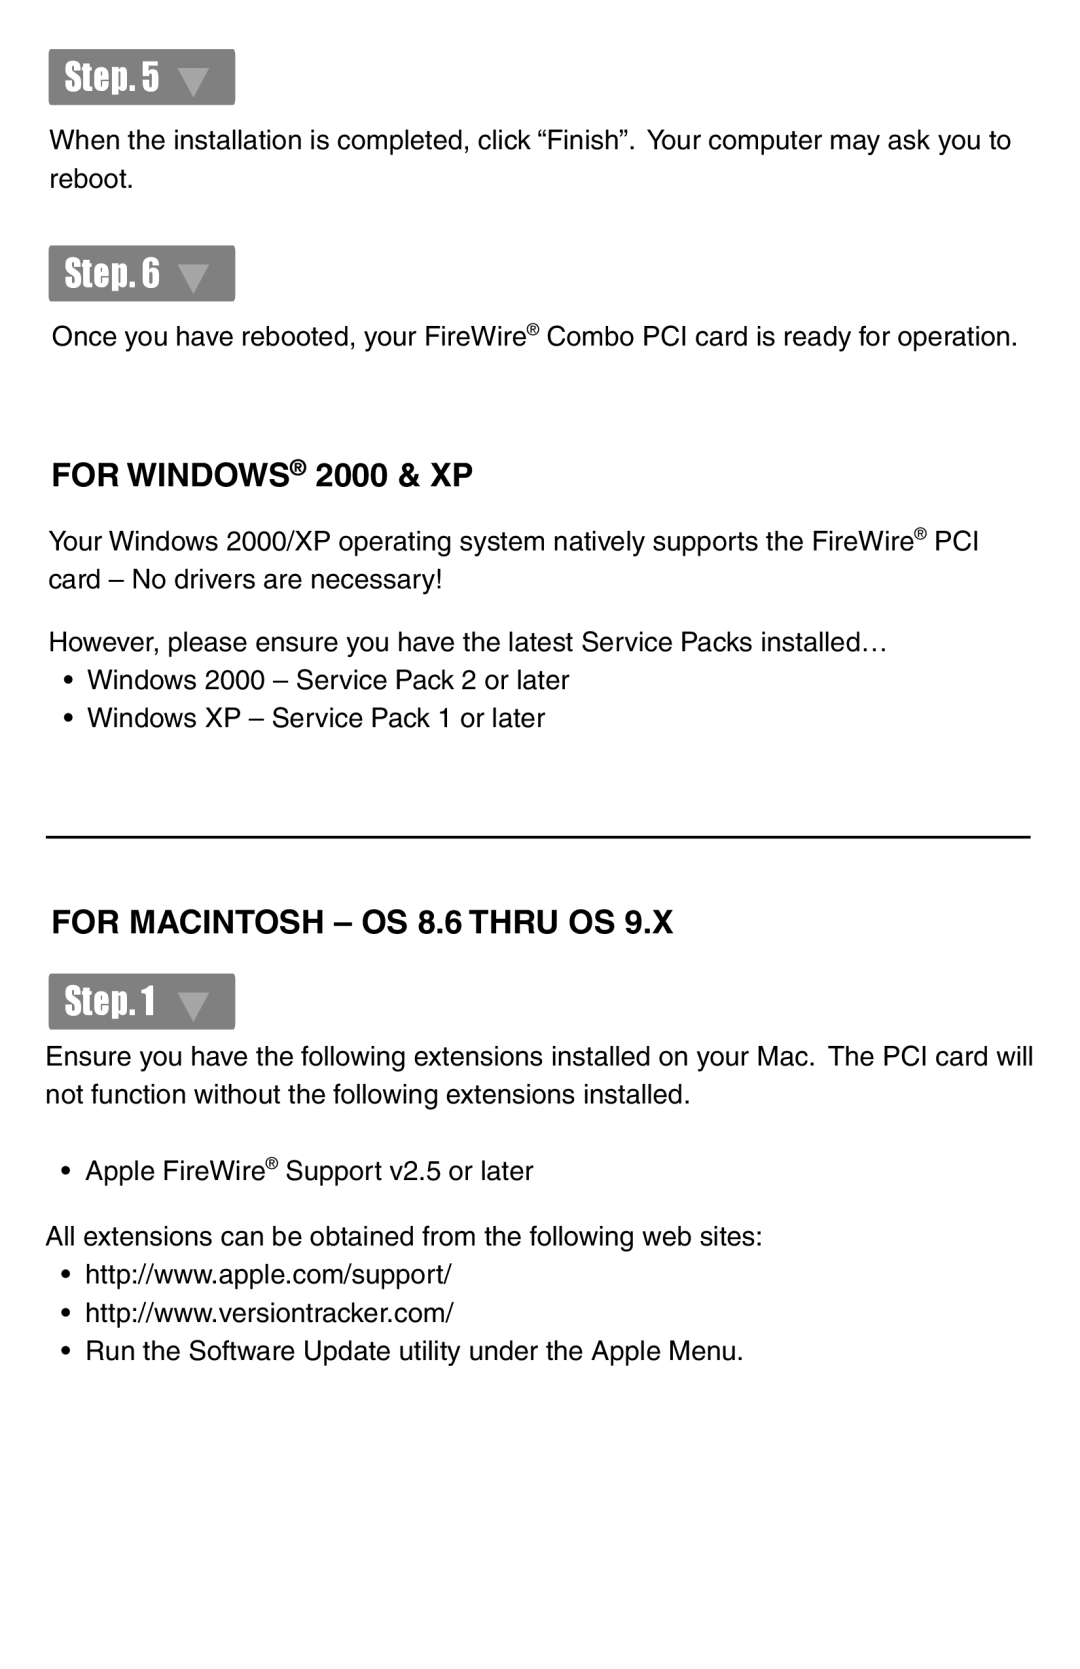 Nintendo GIC430F quick start FOR WINDOWS 2000 & XP, FOR MACINTOSH - OS 8.6 THRU OS, Step 